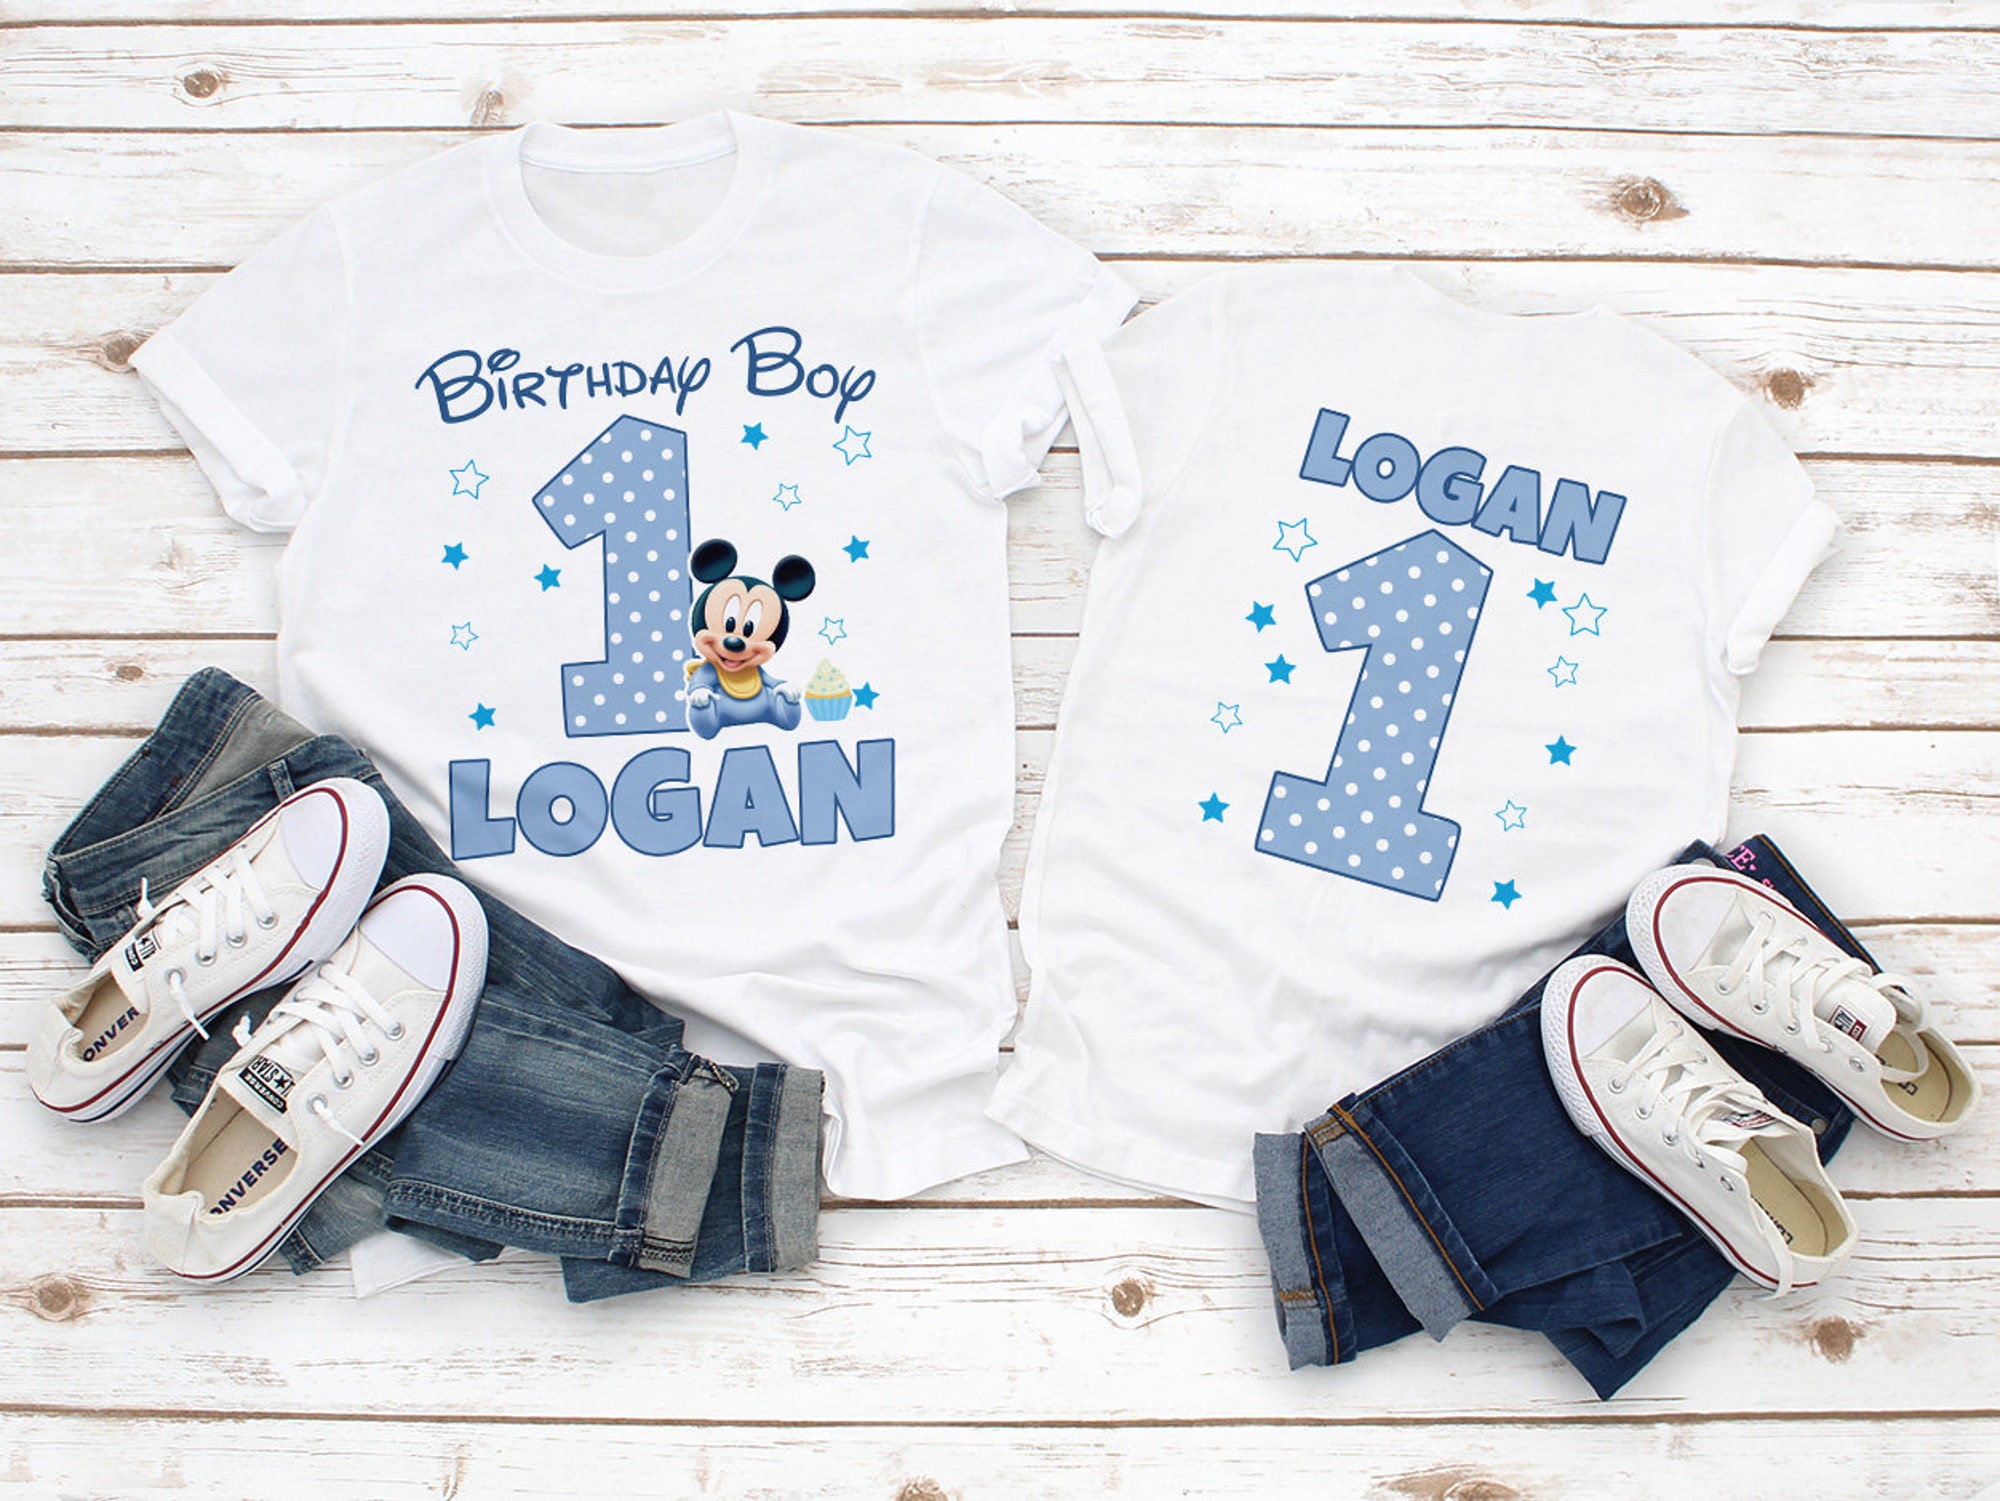 Baby Mickey Birthday Shirt, Mickey Mouse Mommy Birthday shirt, Mickey Birthday shirt, Mickey Matching Family Birthday shirts, Boys Birthday